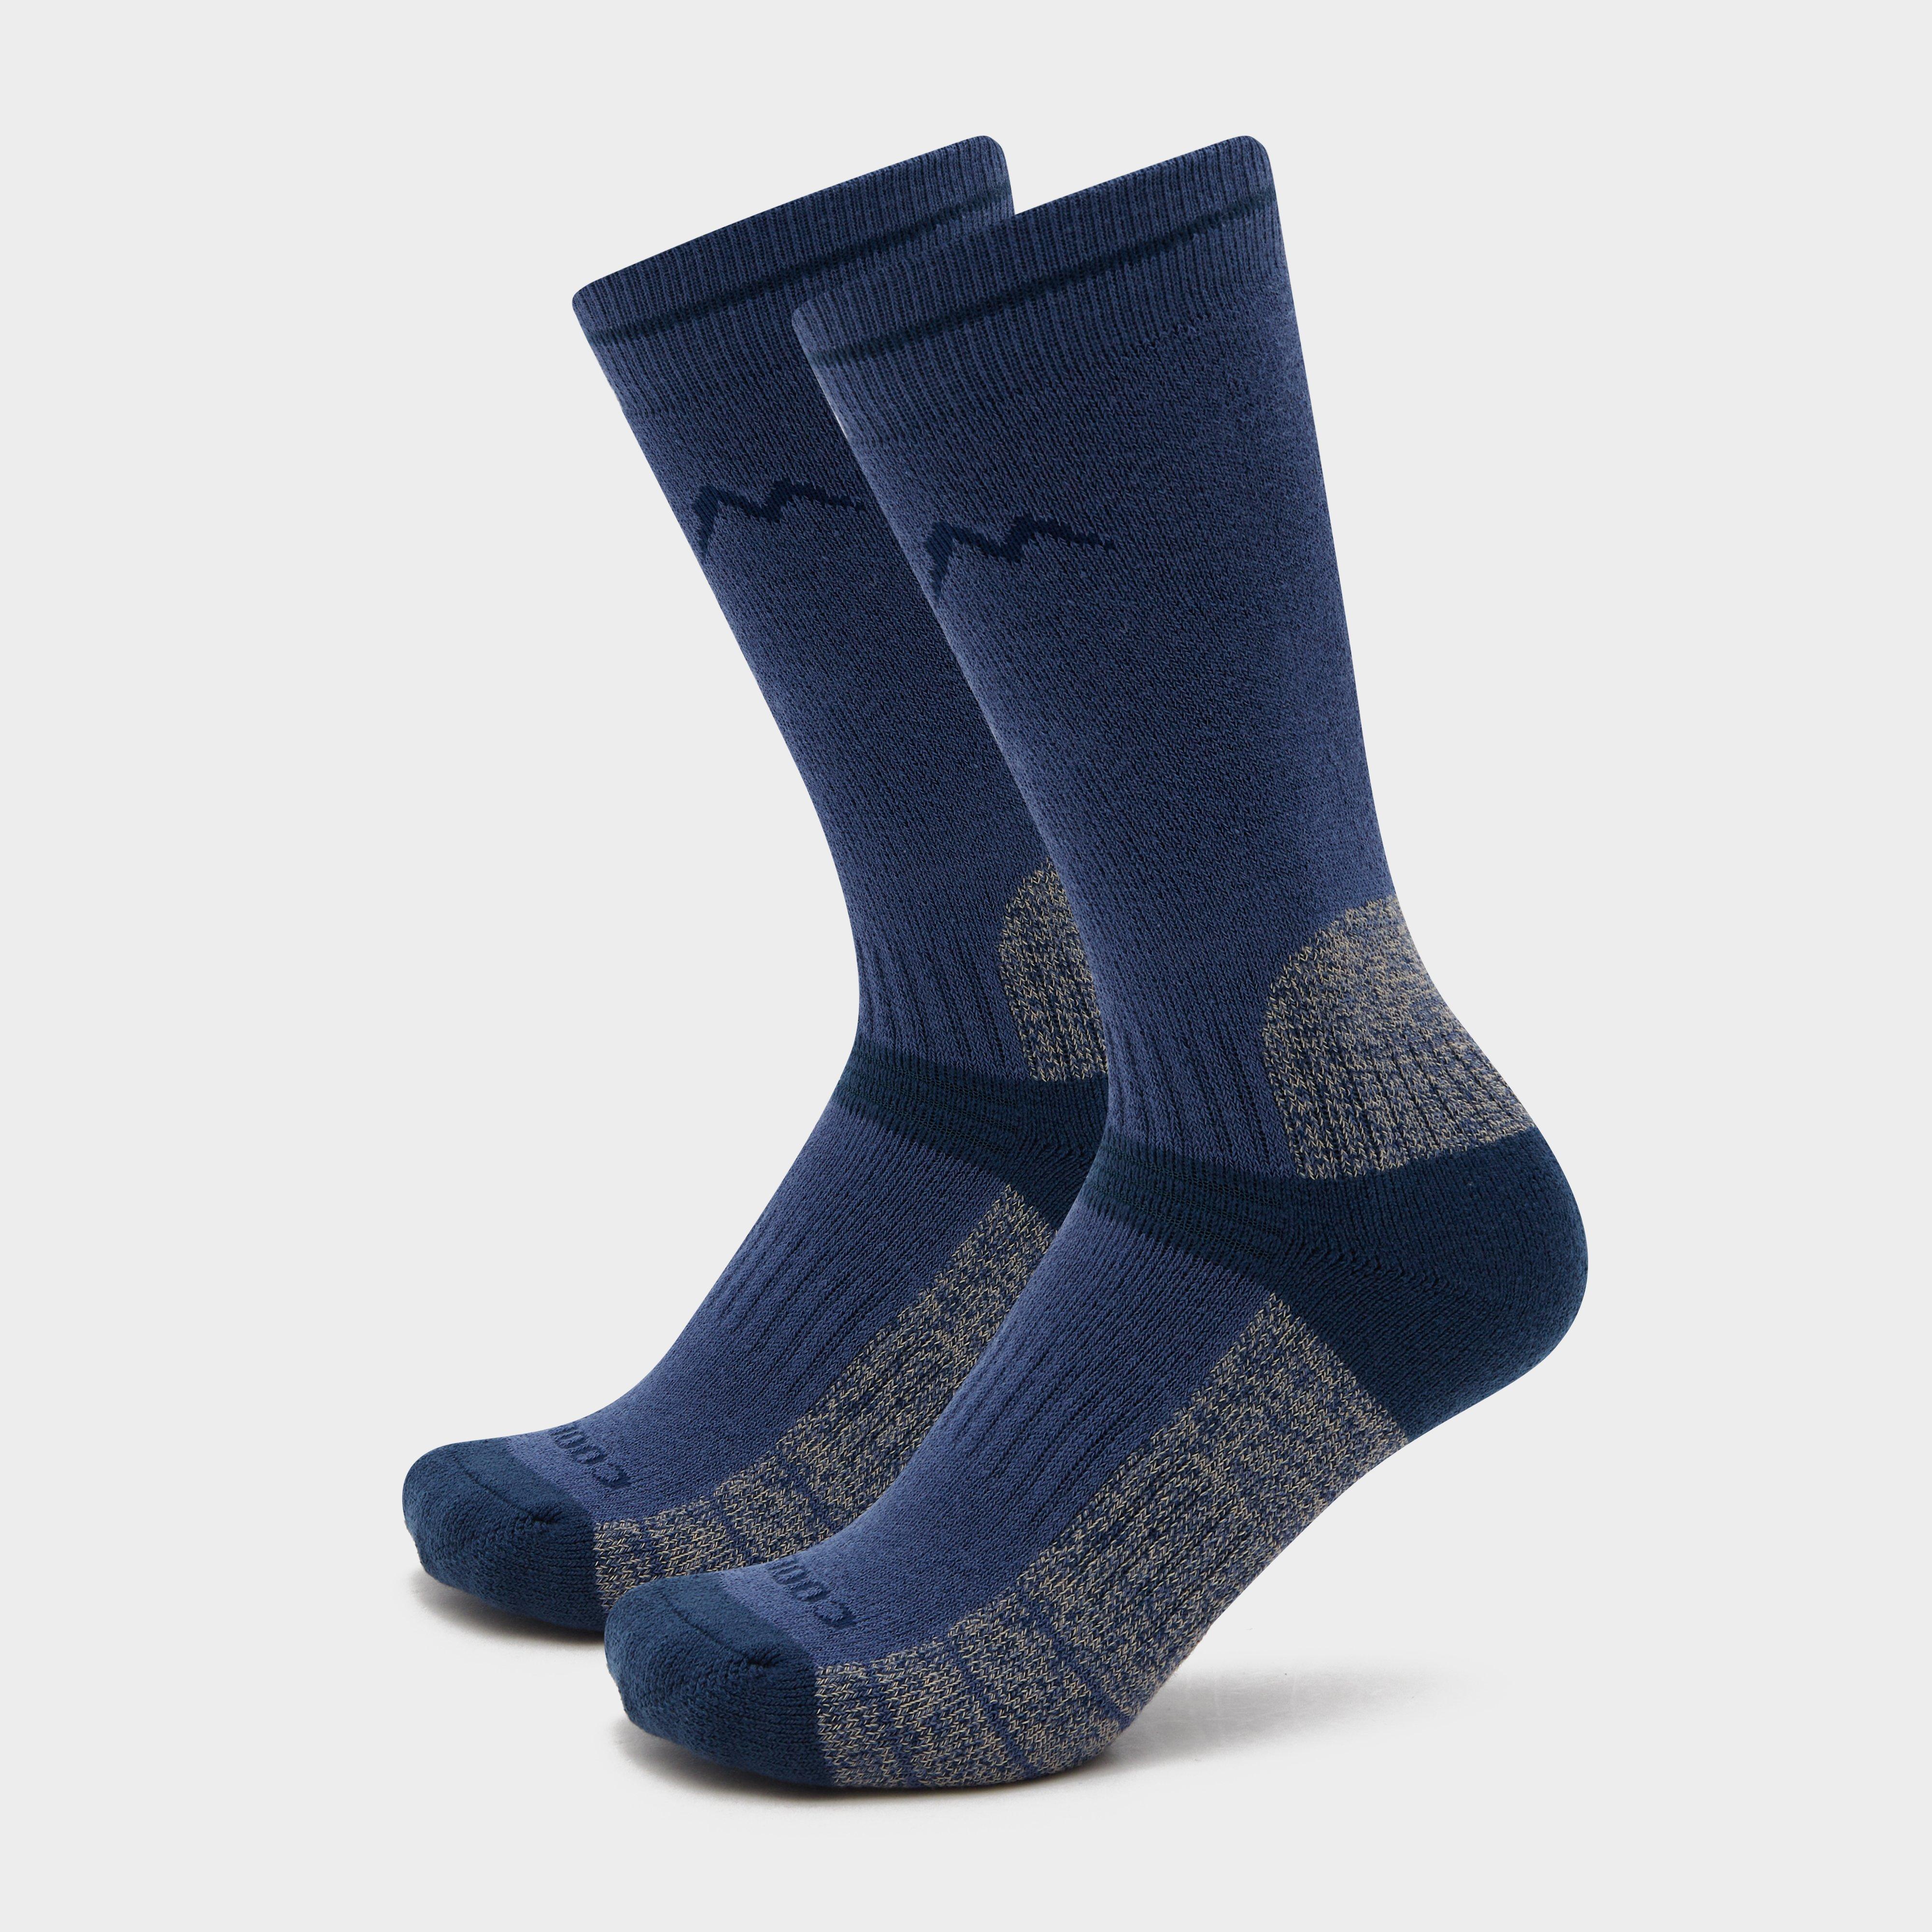 Peter Storm Women's Midweight Outdoors Socks, Blue